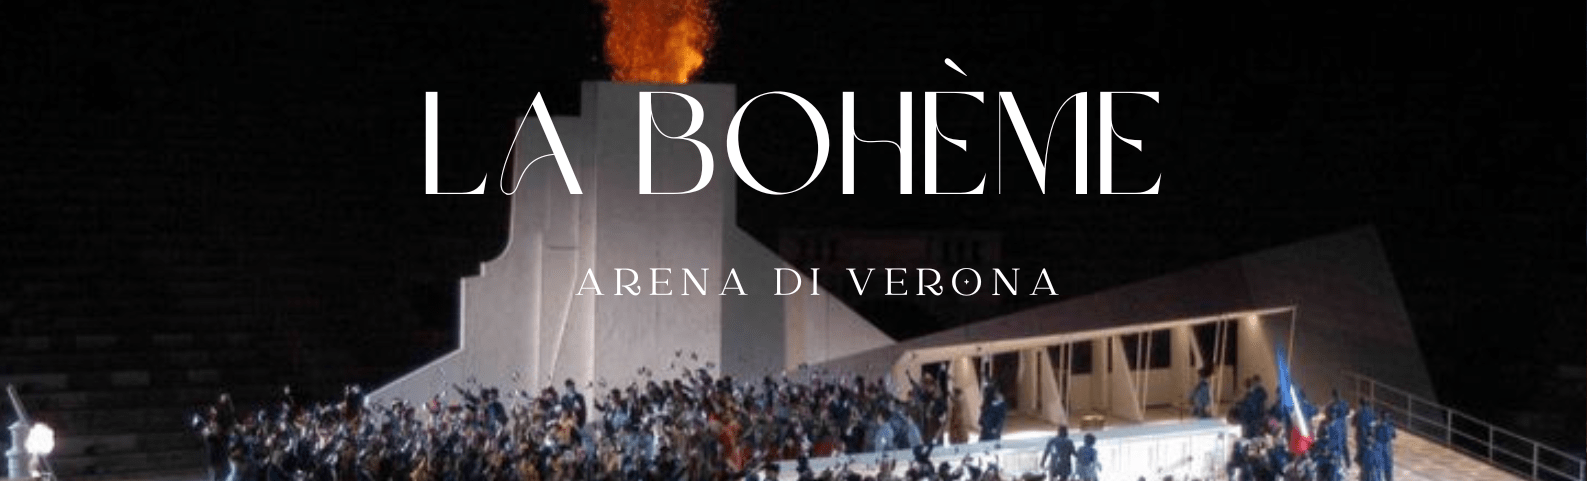 la-boheme-opera-arena-di-verona-tickets